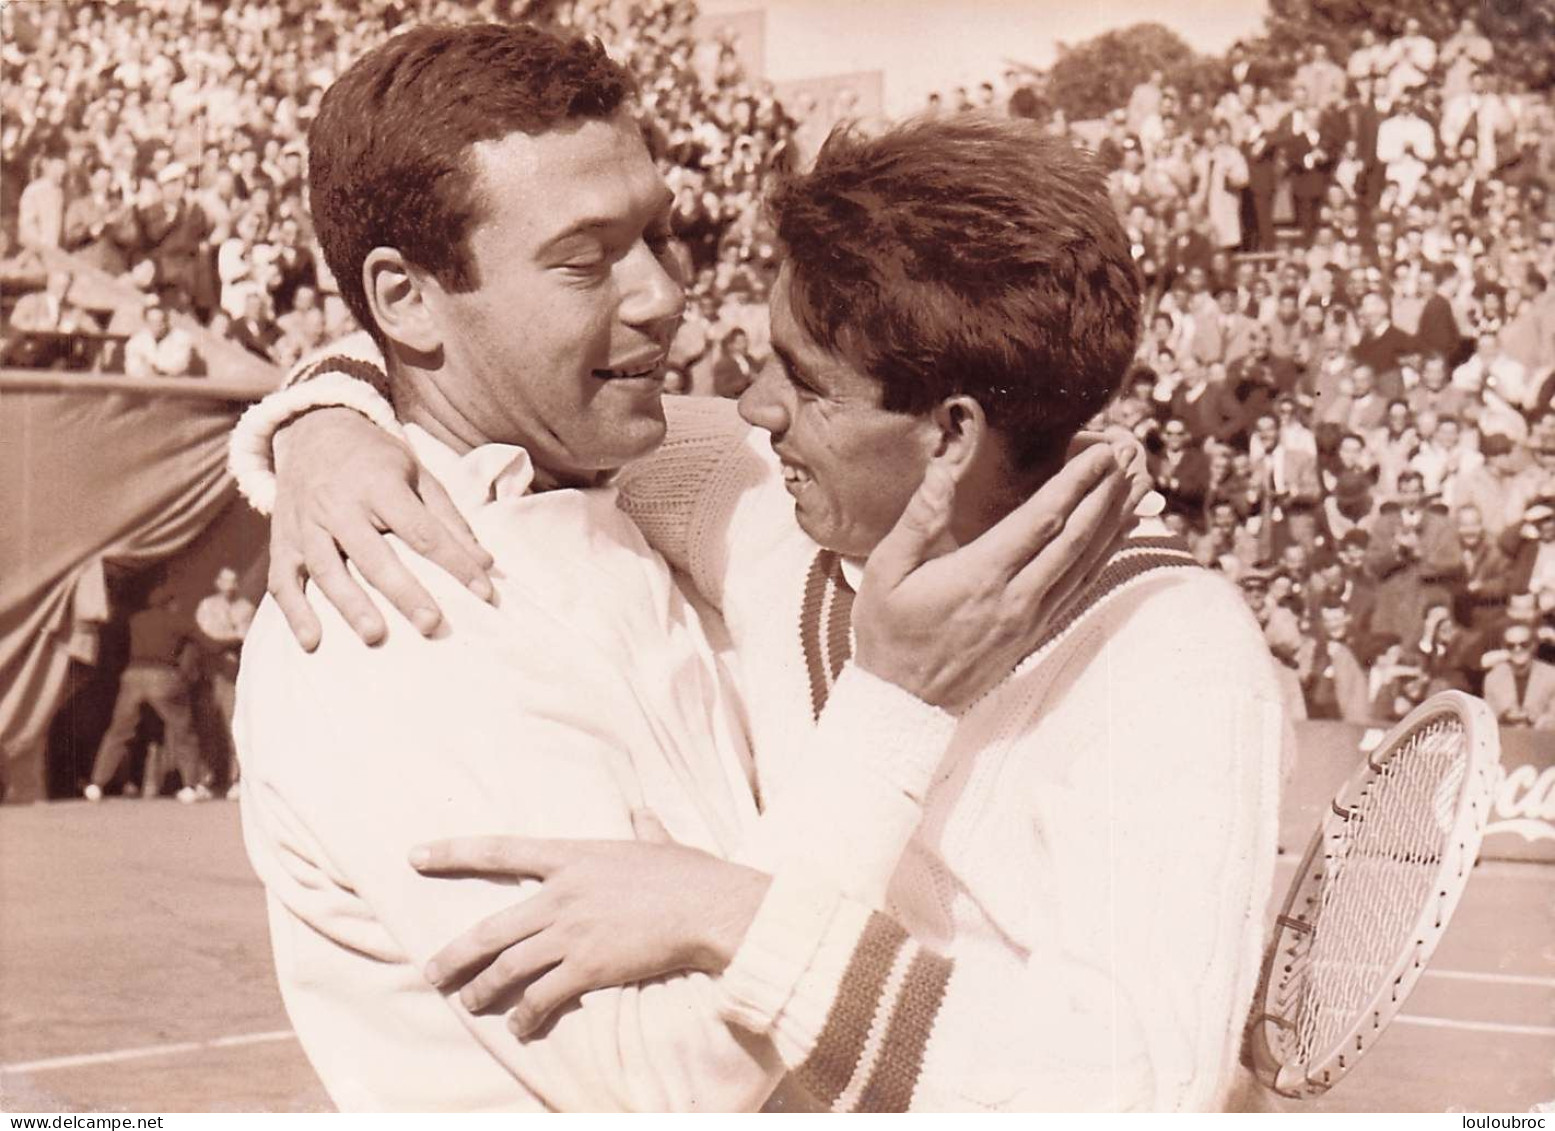 TENNIS ROLAND GARROS 05/1961 VICTOIRE DE SANTANA CONTRE PIETRANGELI EN 5 SETS PHOTO 18X13CM - Sports